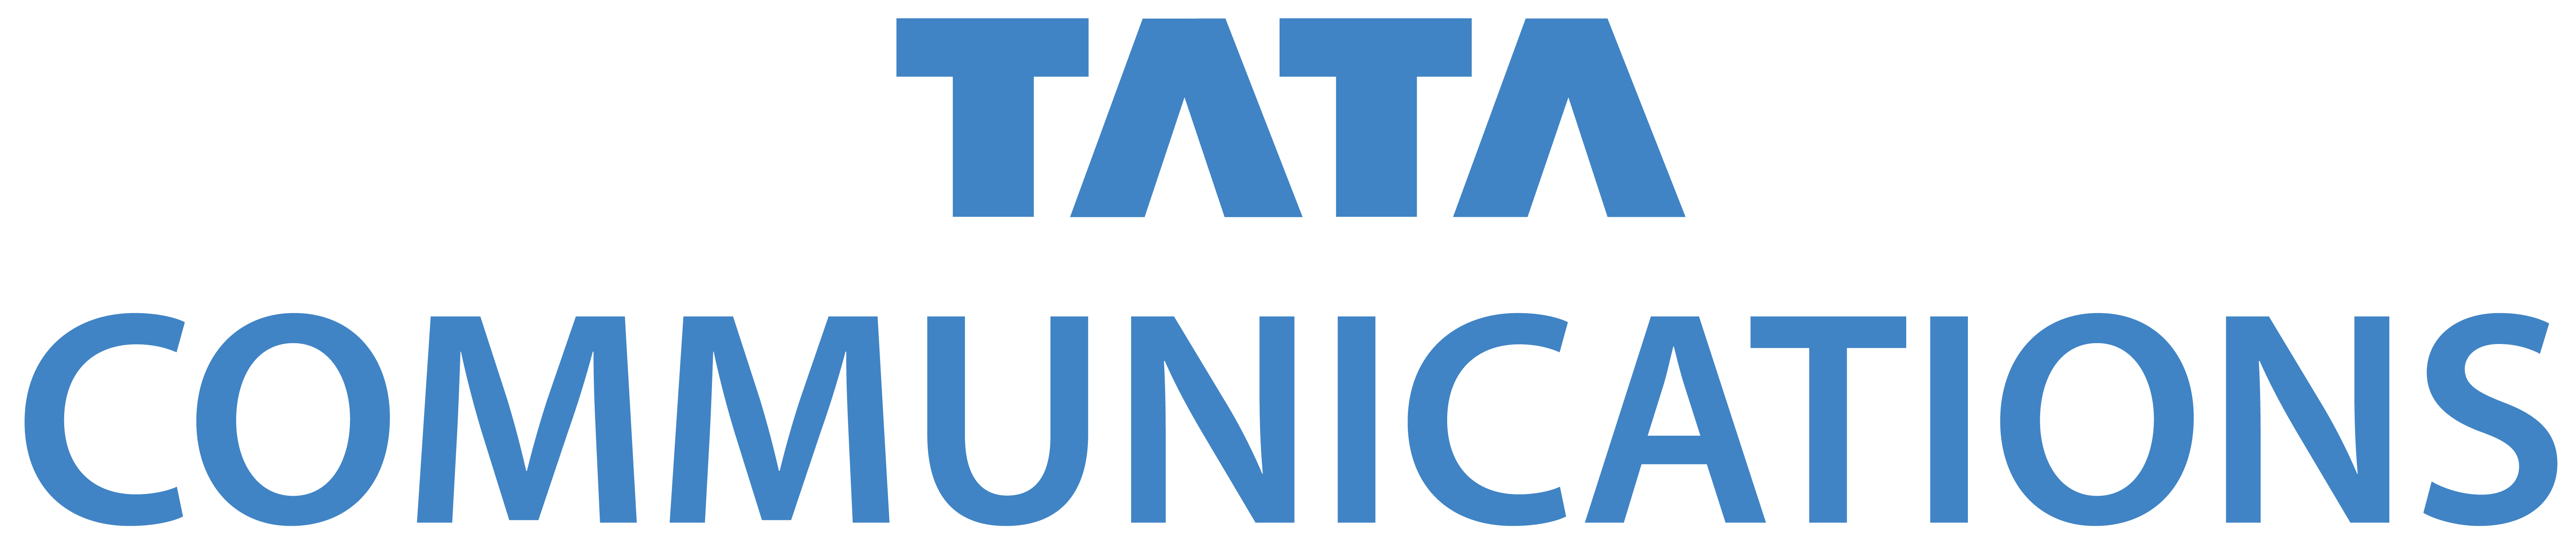 Tata Communications Ltd